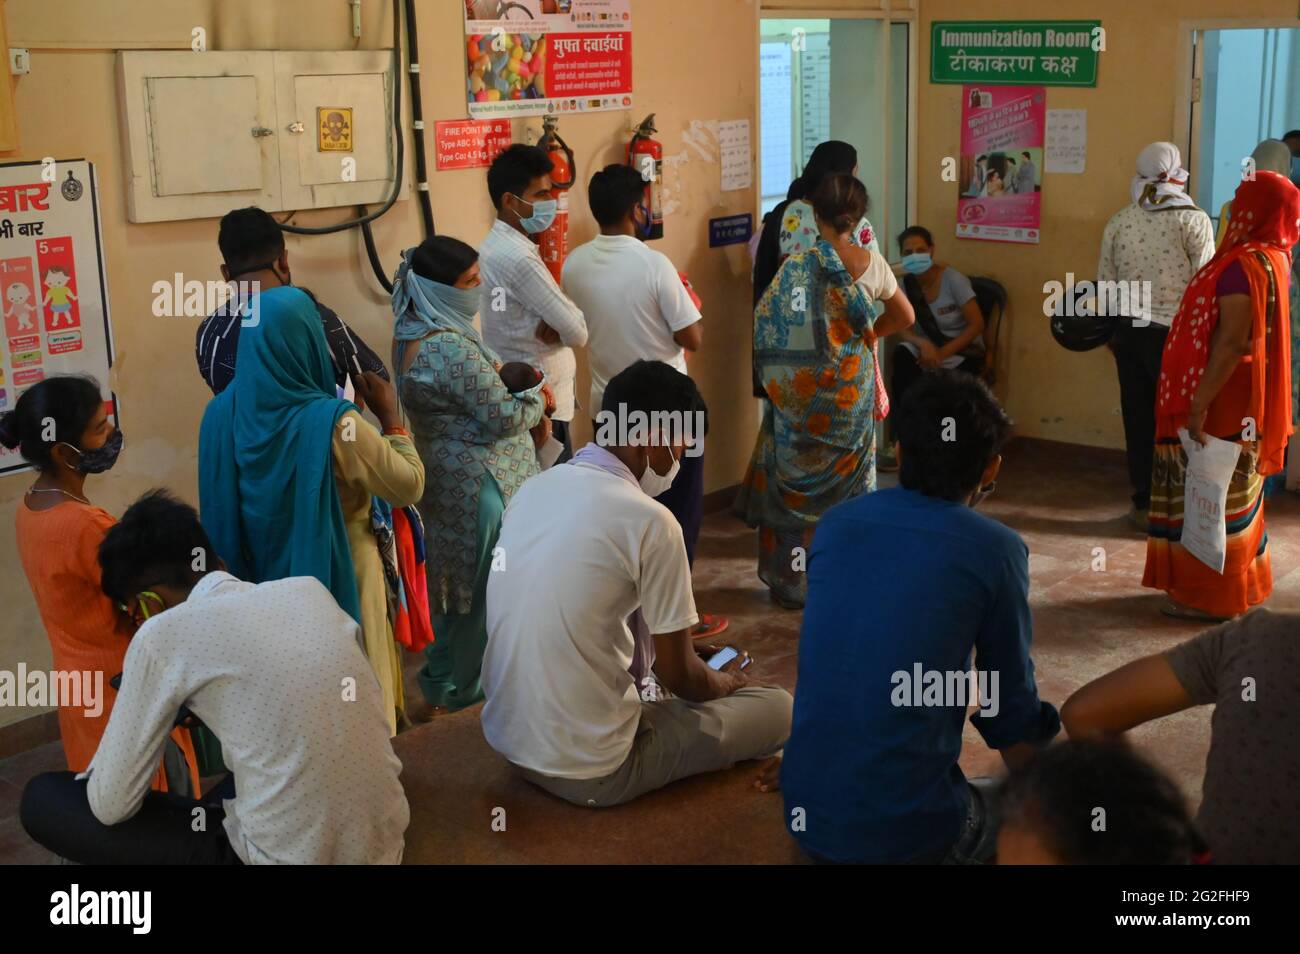 Neonato con i genitori in coda per la vaccinazione senza maschera presso il Sector-10 Government Hospital, gurgaon, haryana, india. 11 giugno 2021. Foto Stock